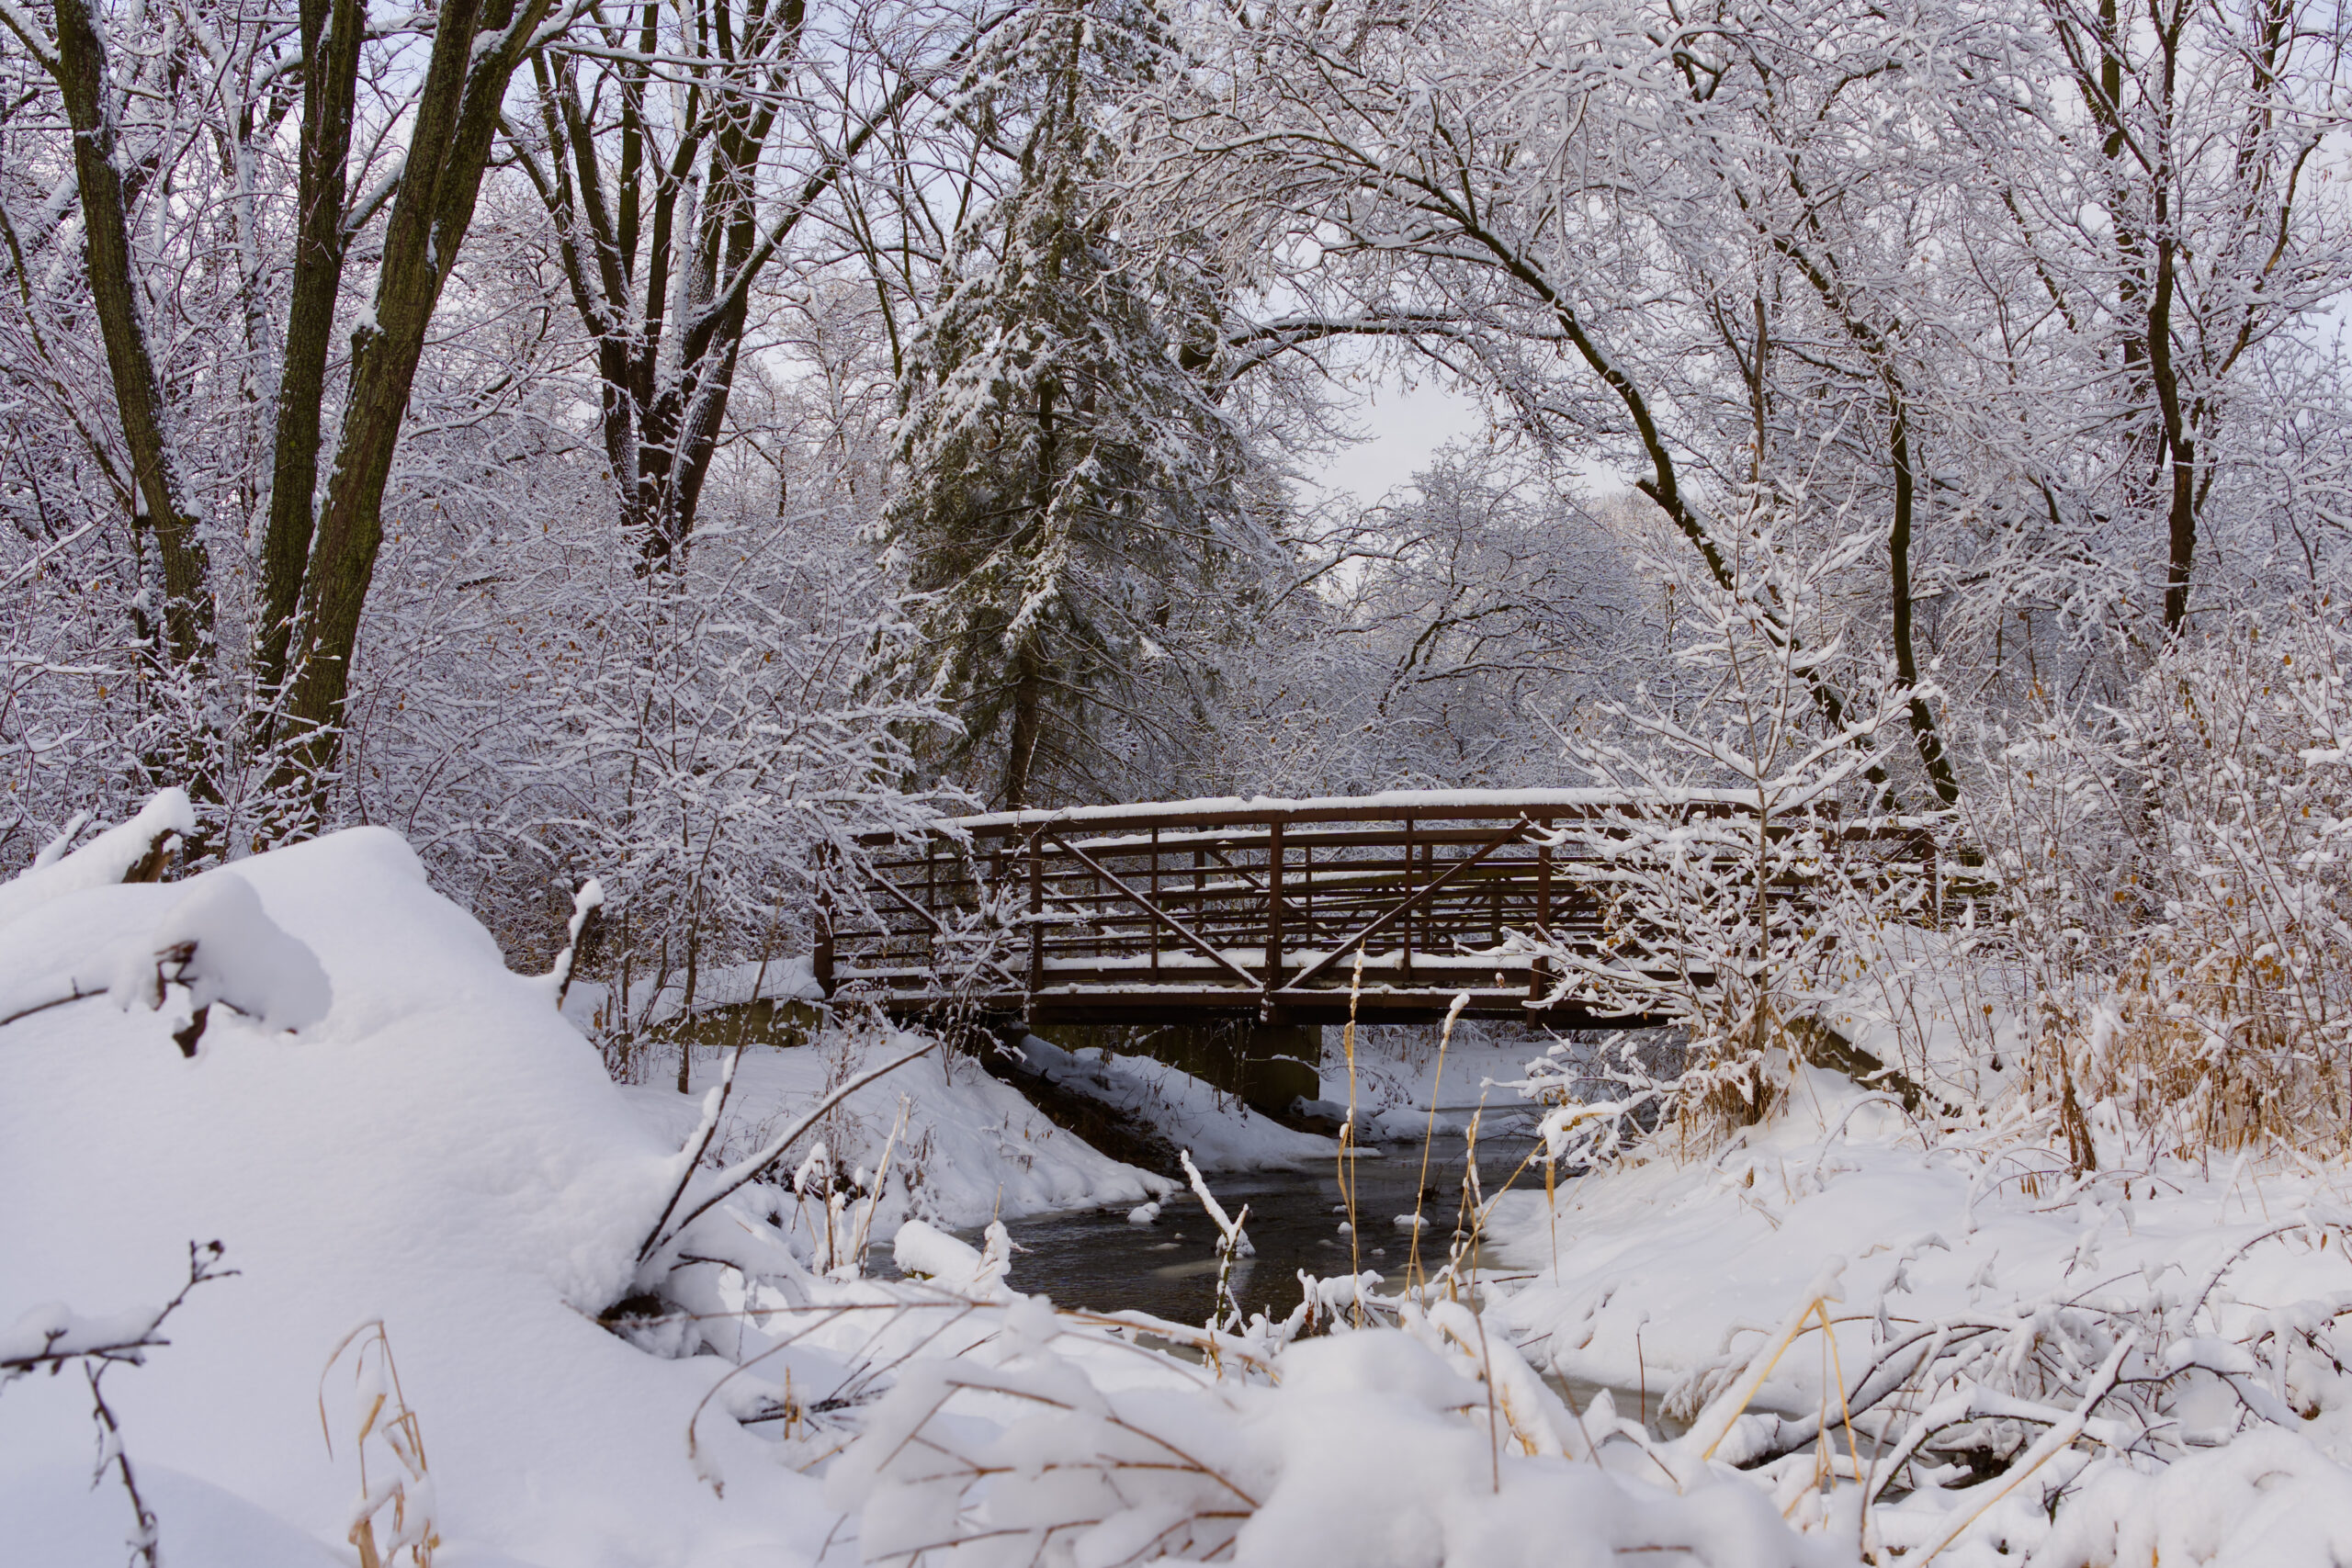 A Winter Wonderland in Bredesen Park